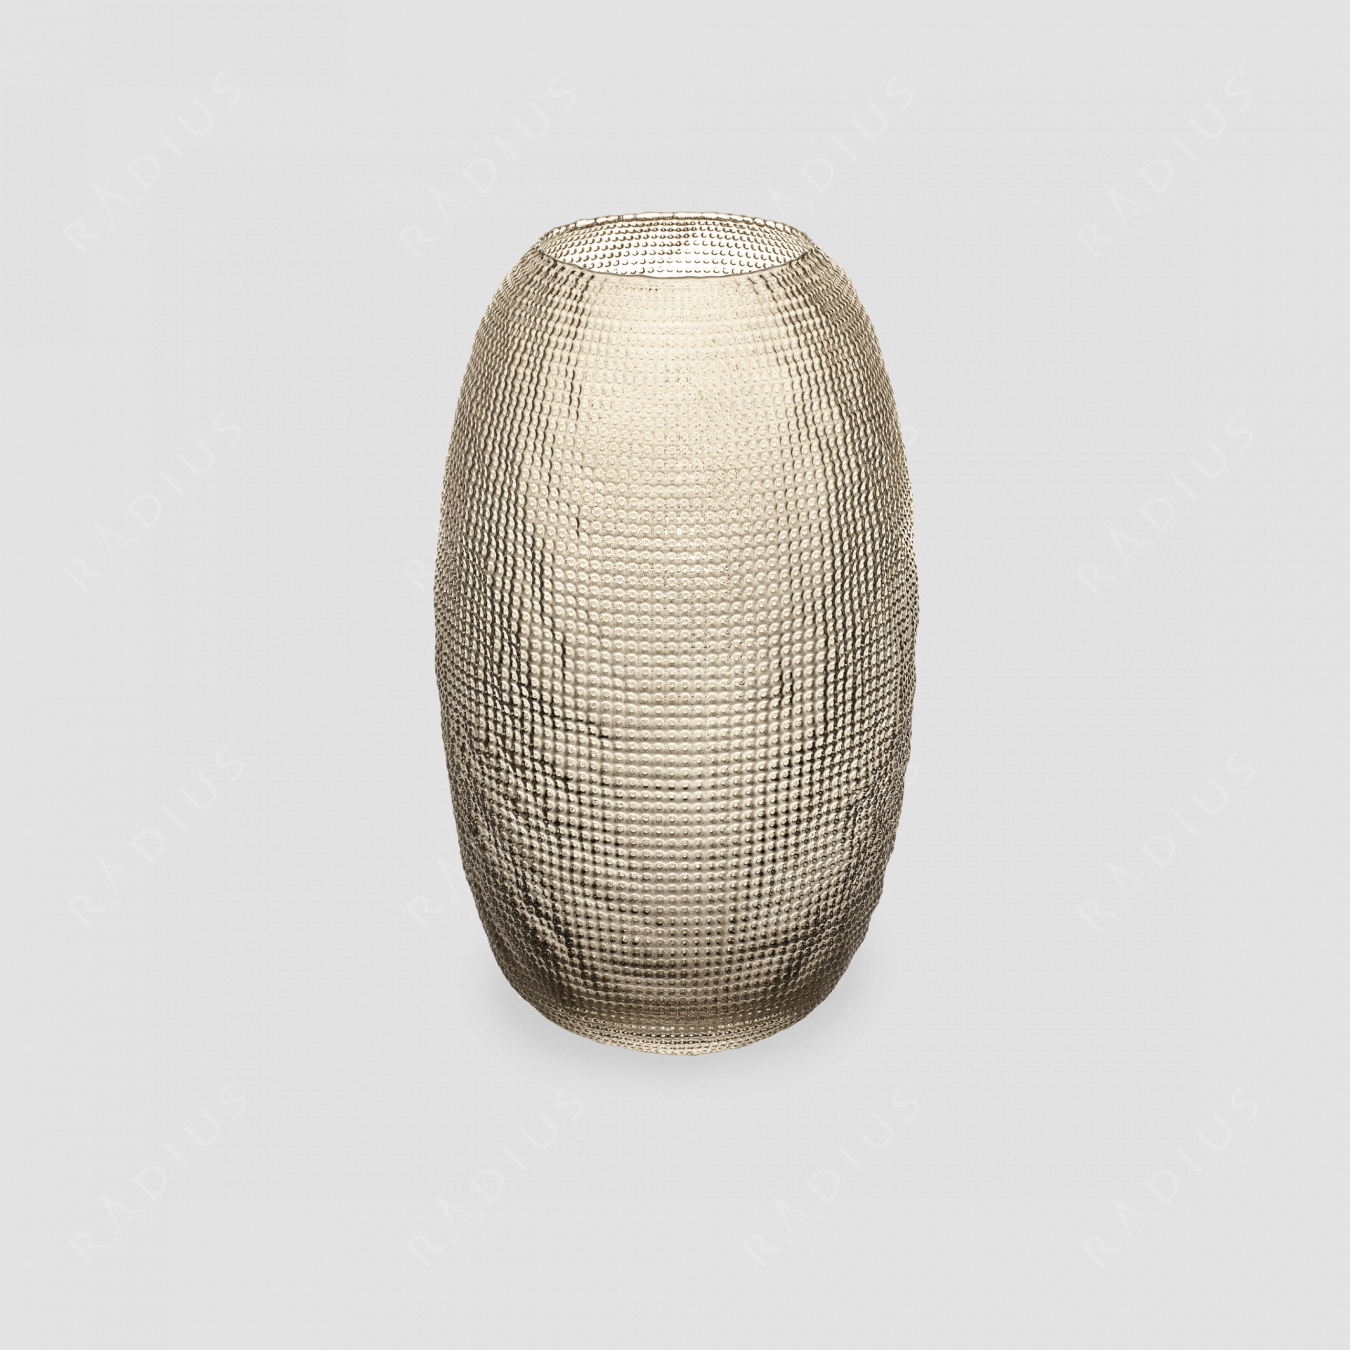 Стеклянная ваза для цветов, диаметр: 17,5 см, высота: 29 см, материал: стекло, цвет: бежевый, серия Diamante, IVV (Italy), Италия